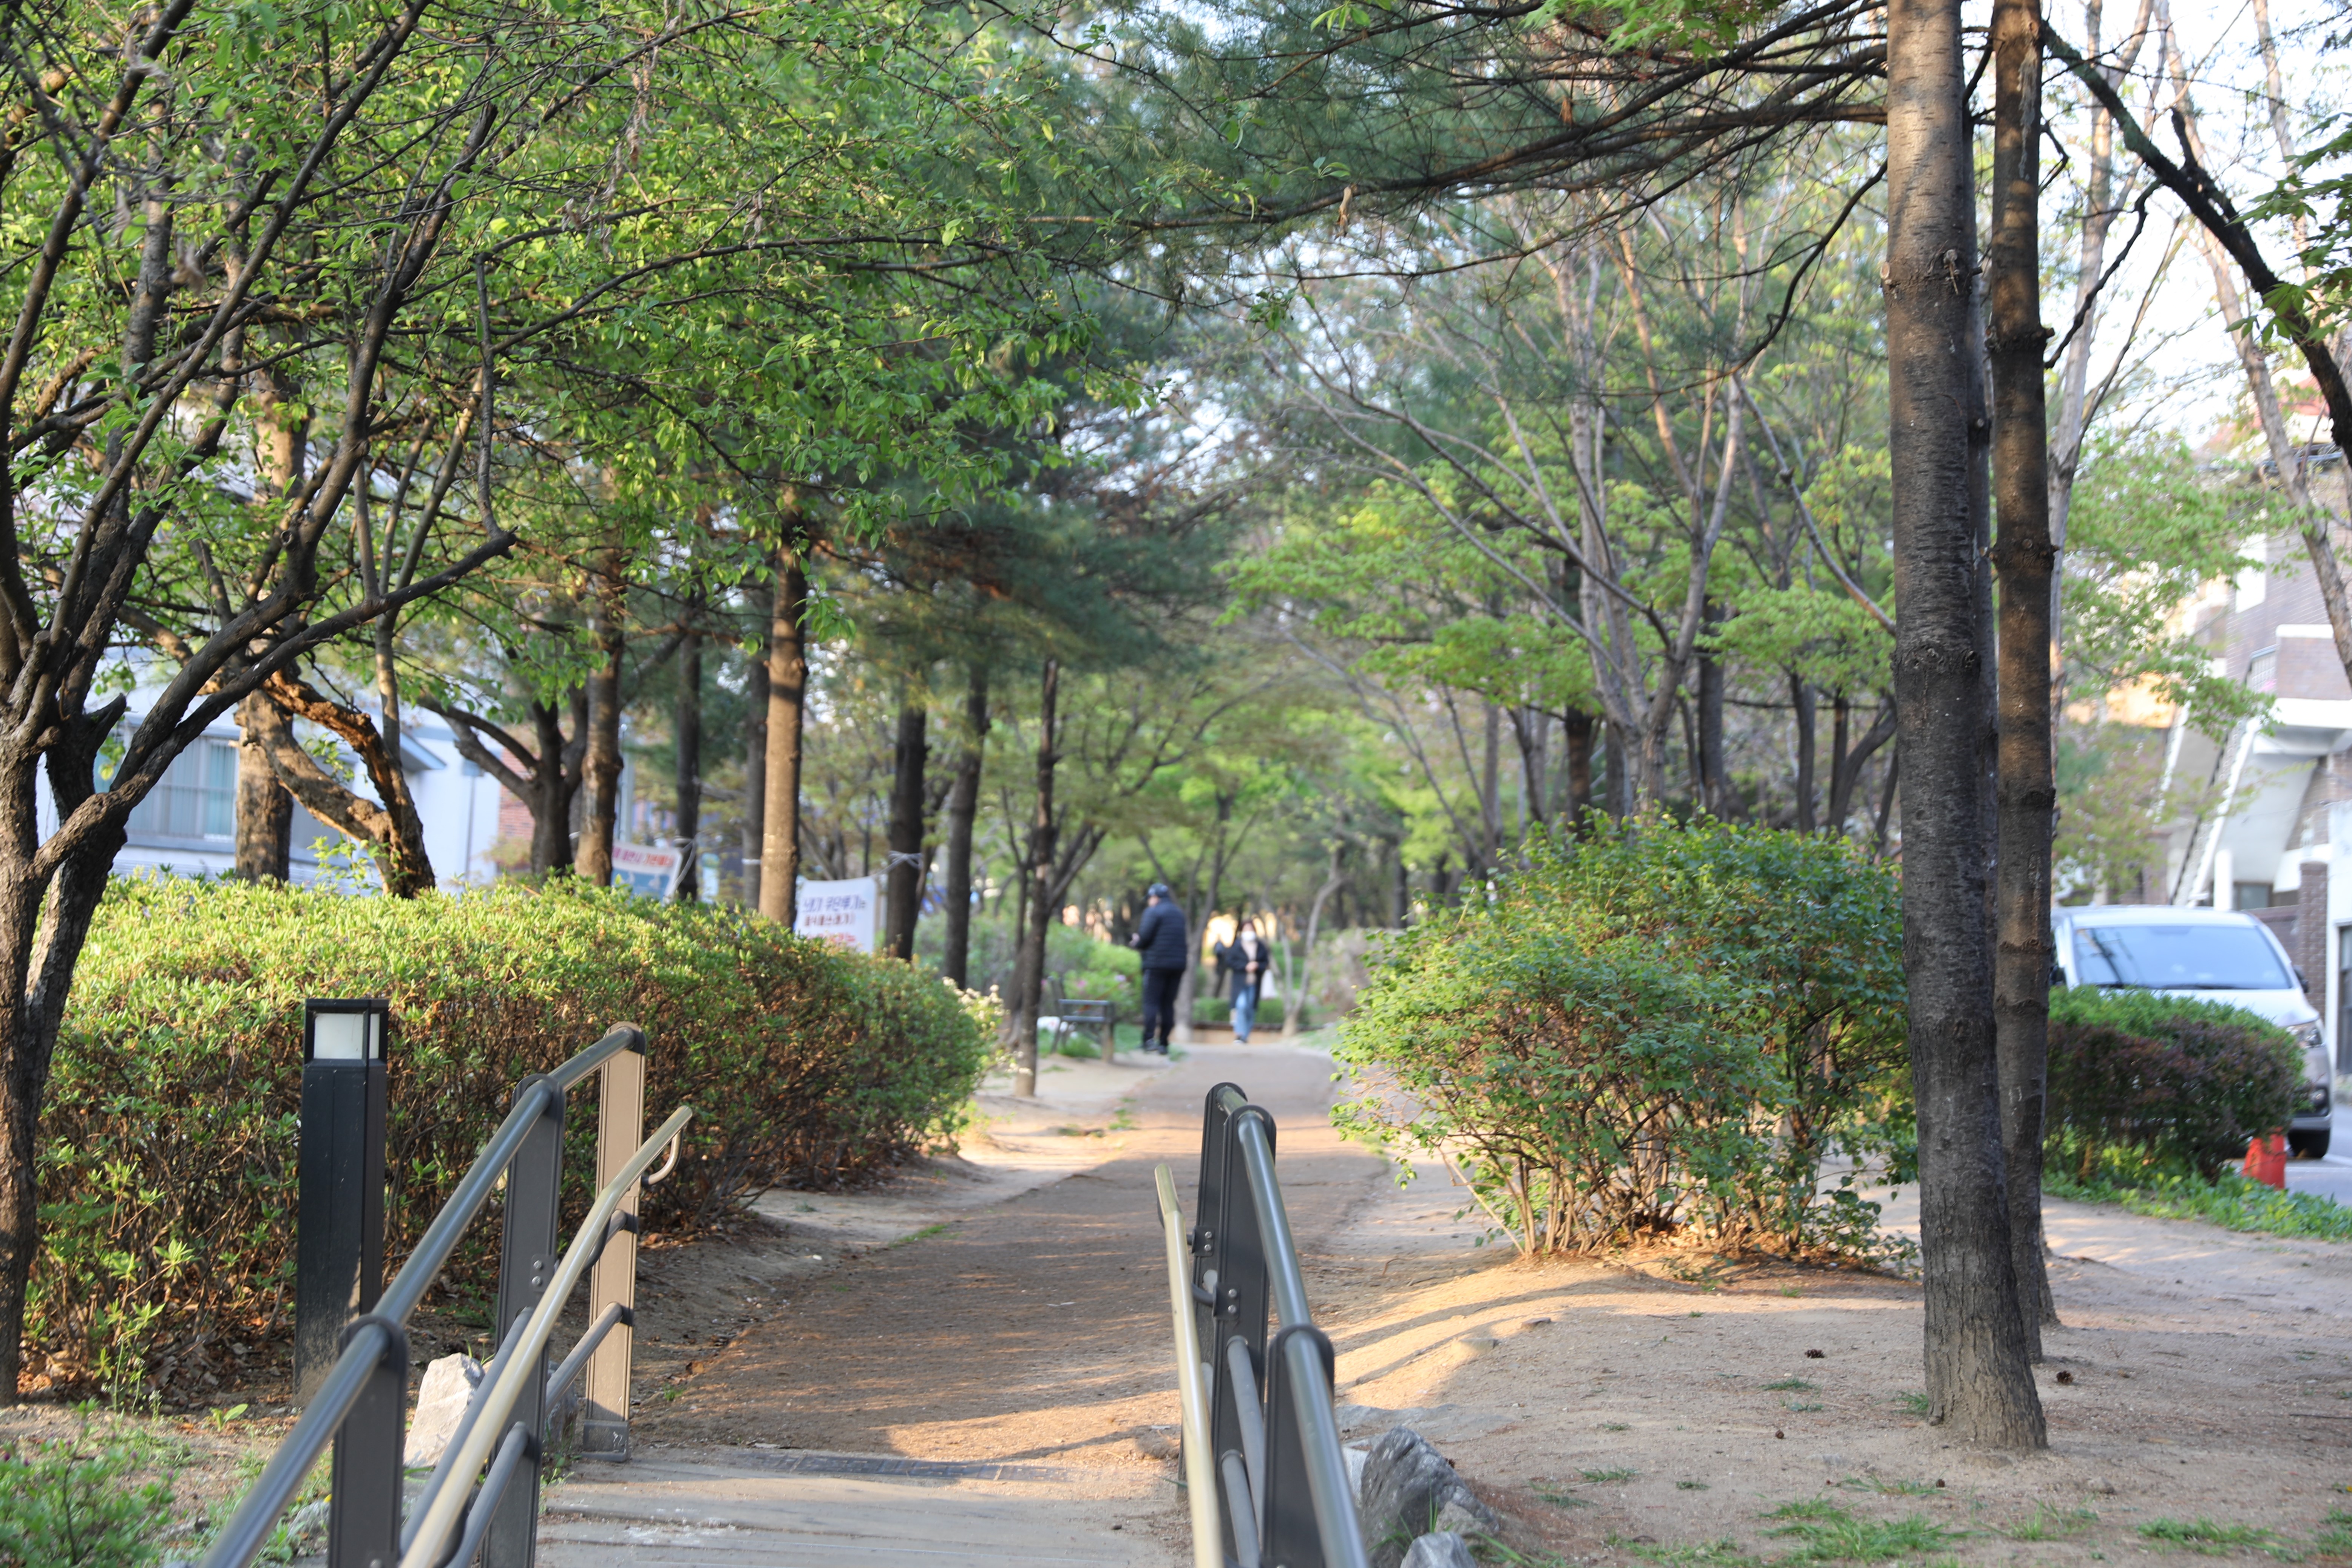 철길퓨전포차 앞 주인공원 주변 모습 (6).JPG